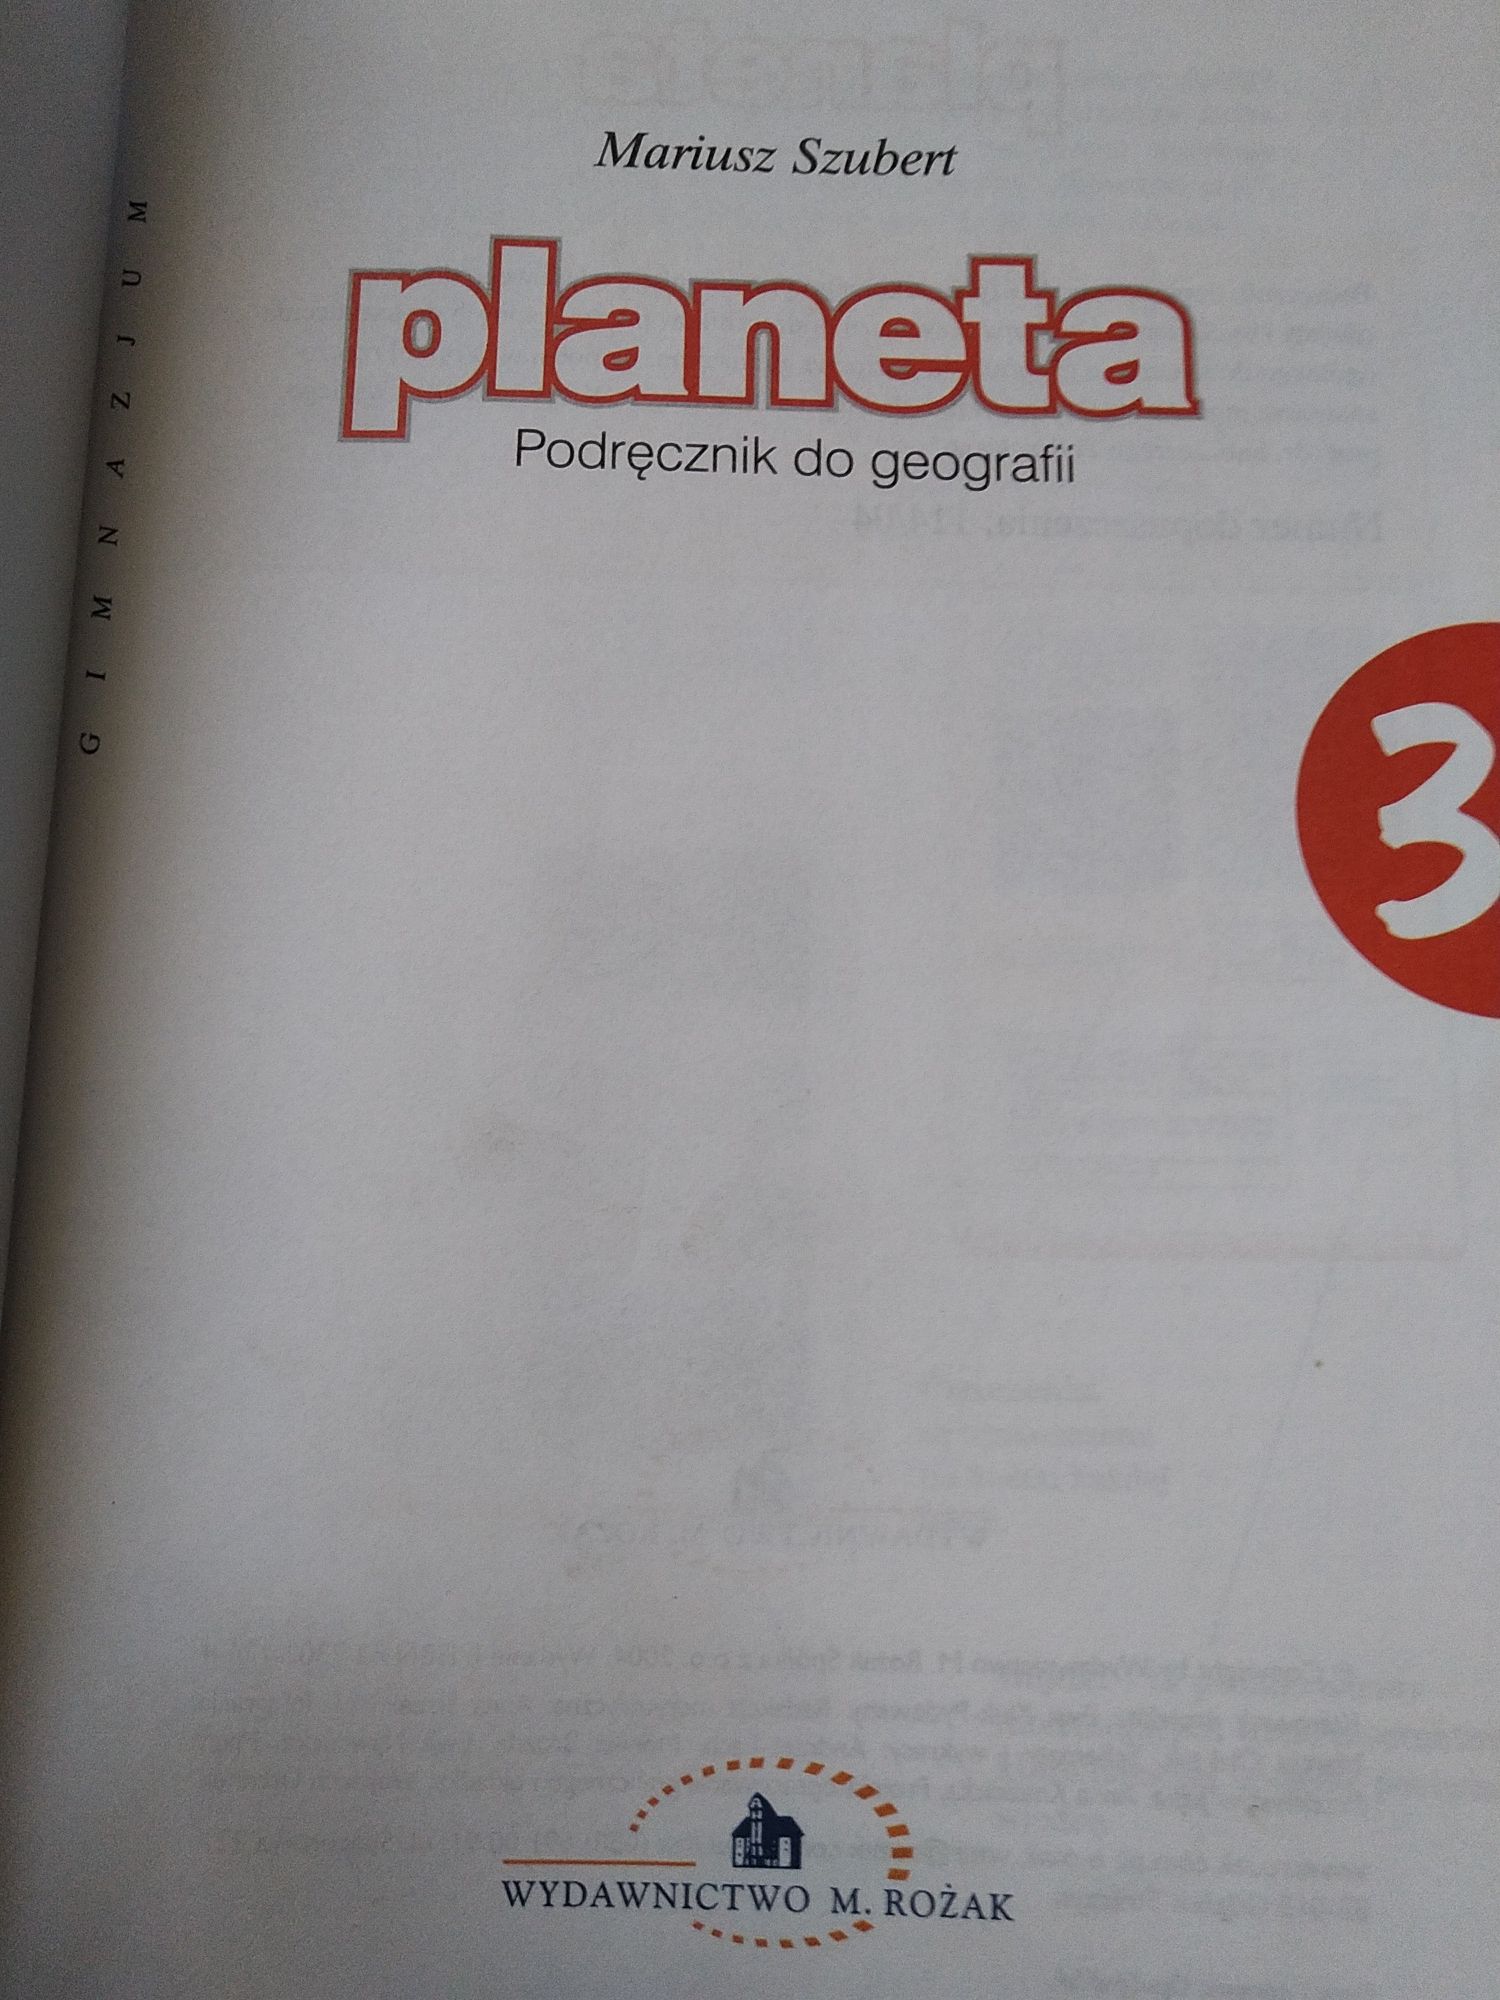 Podręcznik do geografii "planeta" gimnazjum, kl. 3